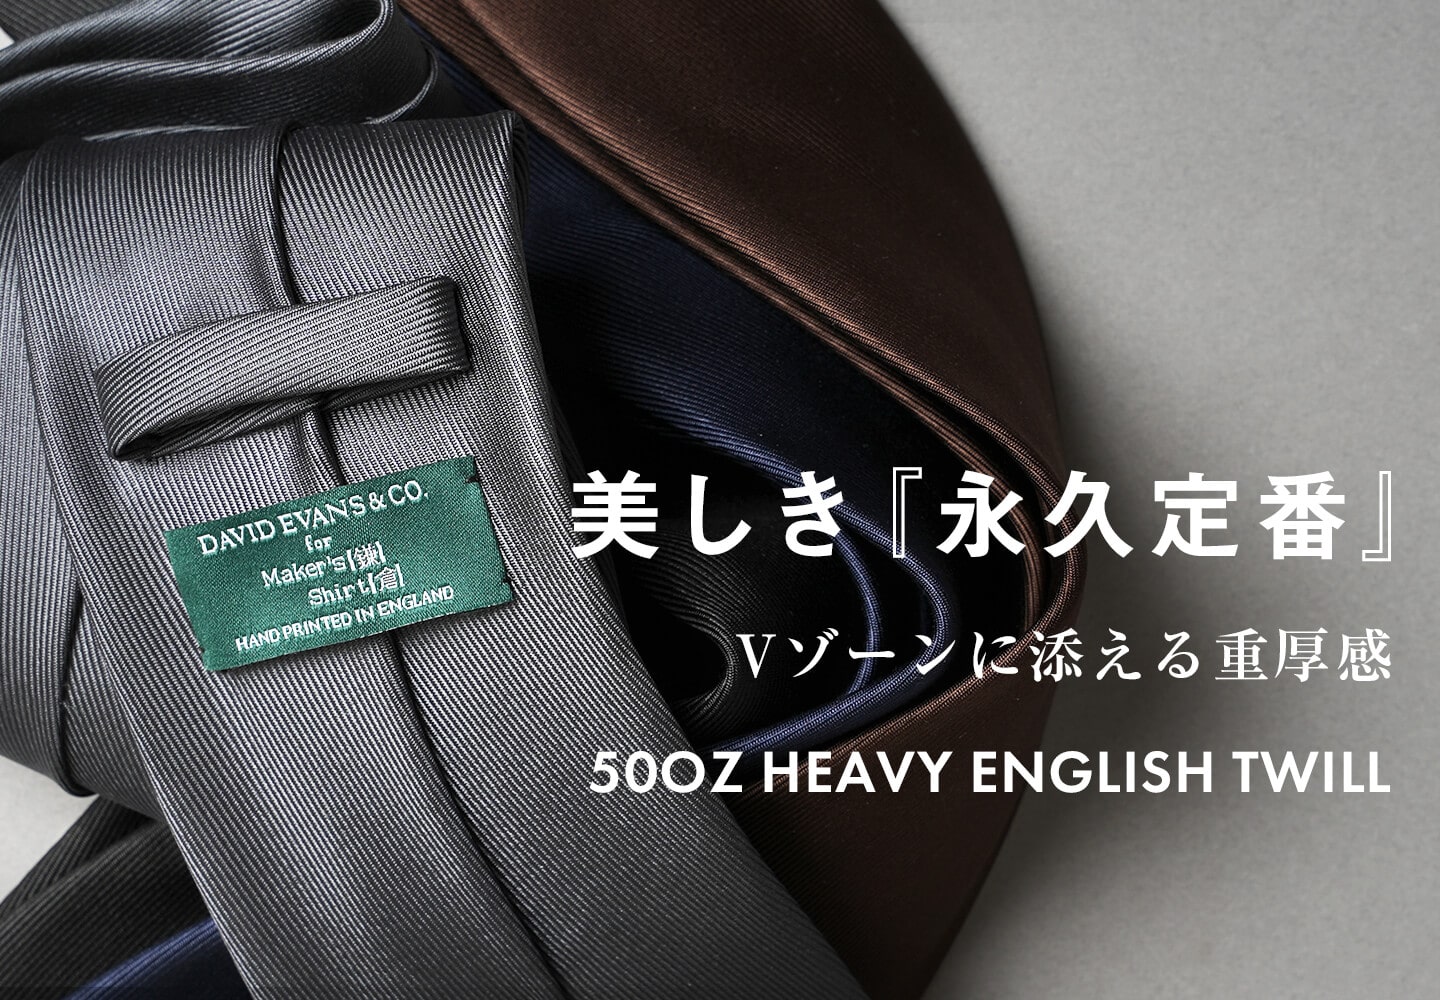 ネクタイ| メーカーズシャツ鎌倉 公式通販 | ハンドメイドネクタイ